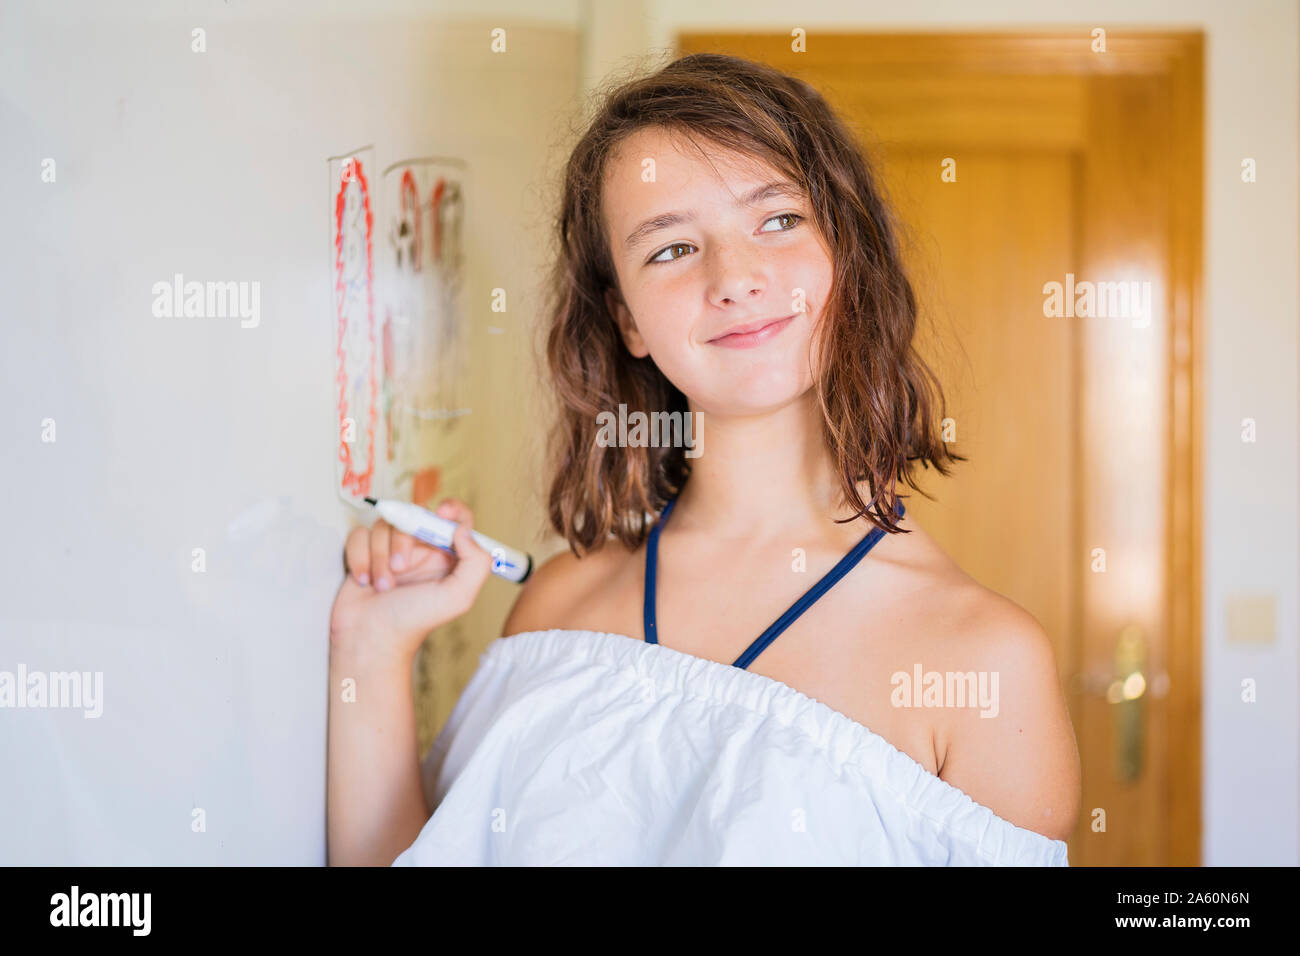 Portrait of smiling girl s'appuyant sur un tableau. Banque D'Images